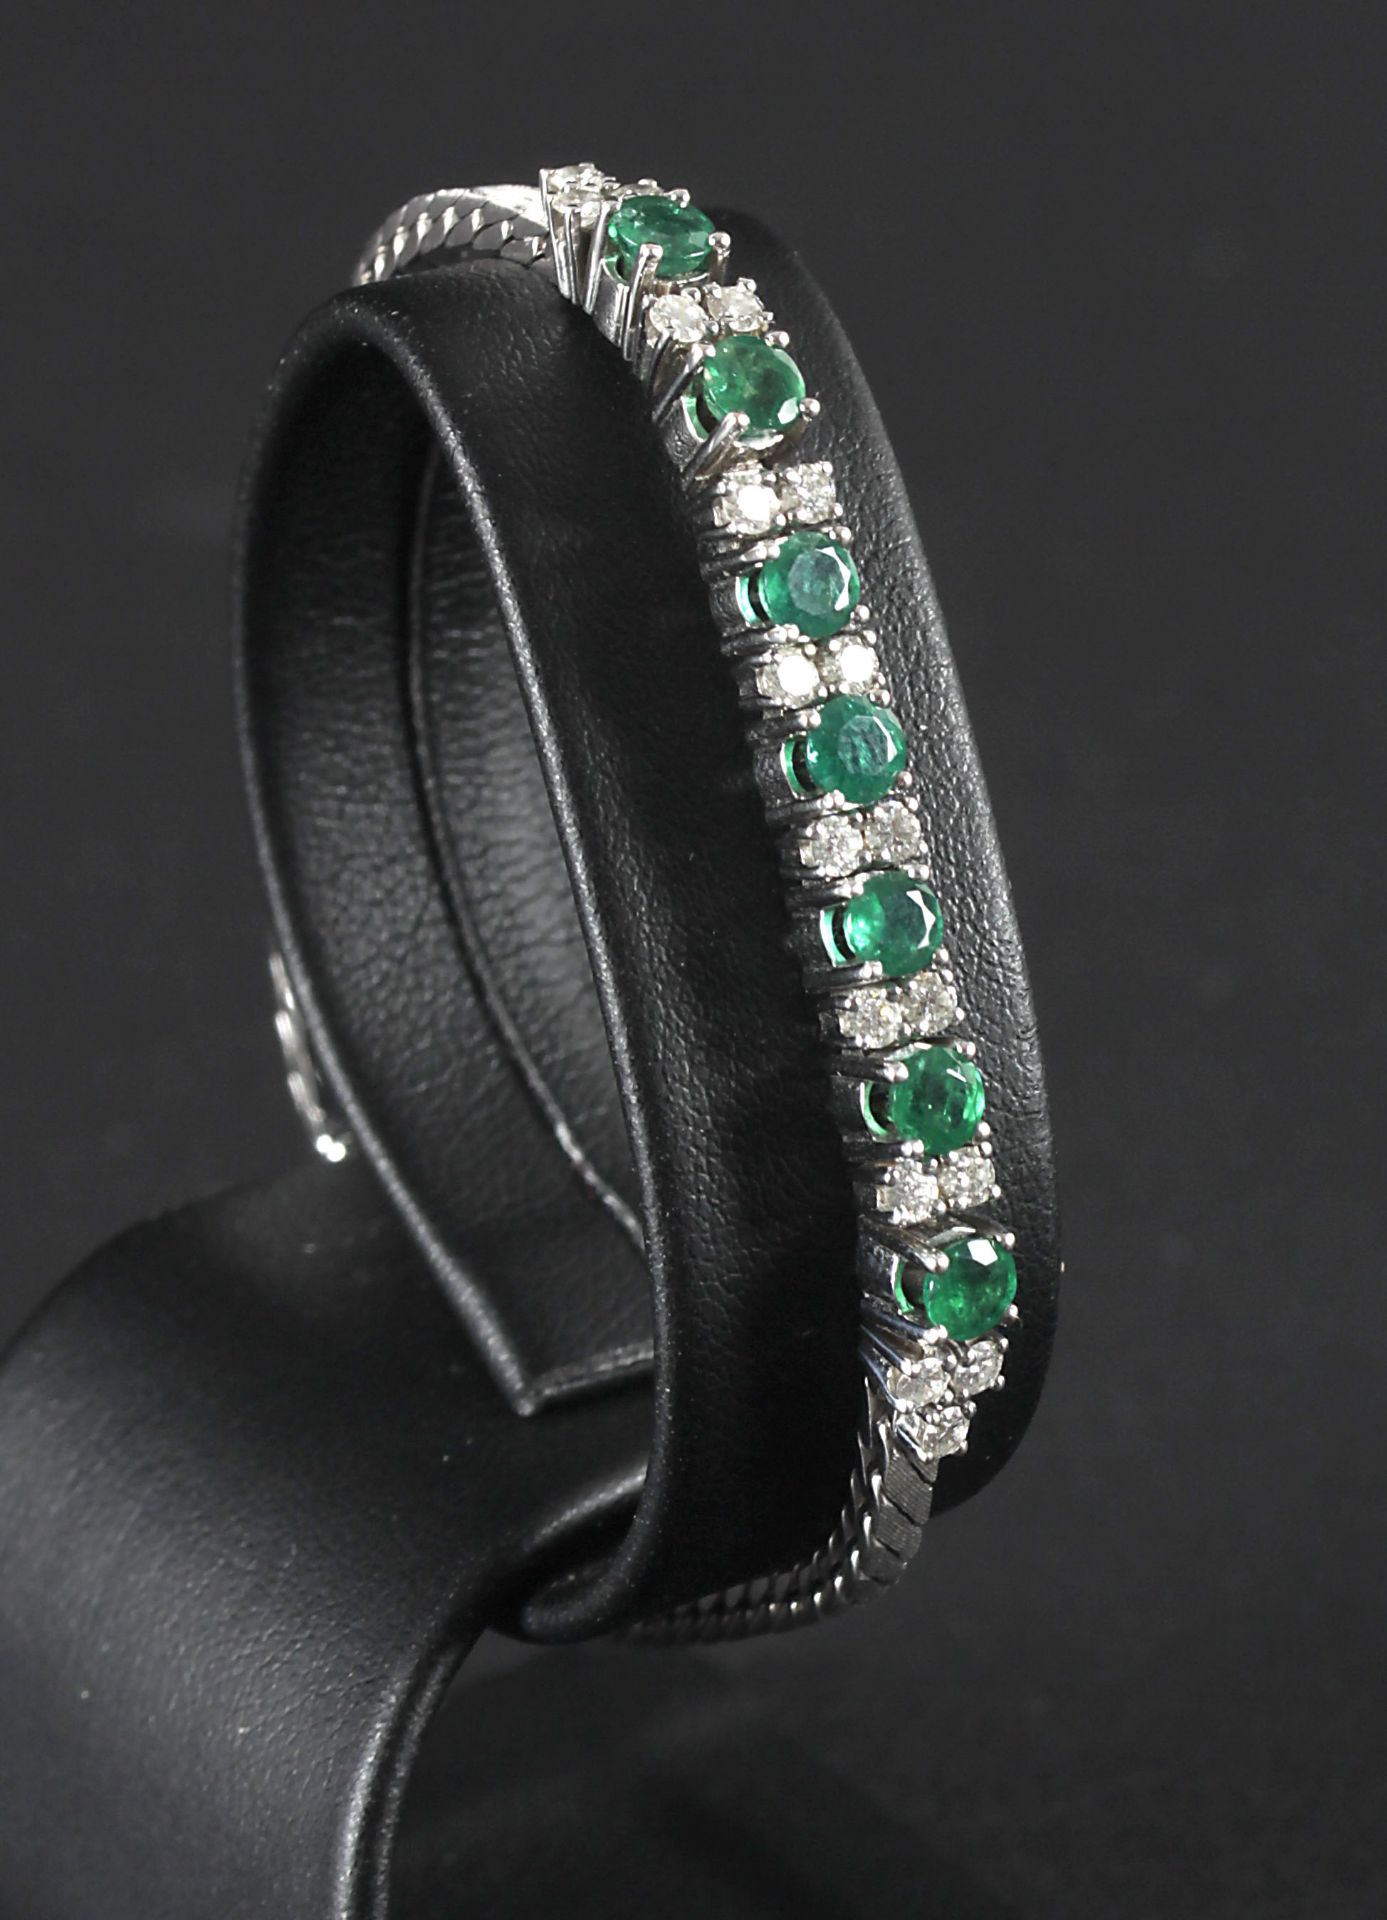 Schönes Armband mit Smaragden und Brillanten, 750er WG